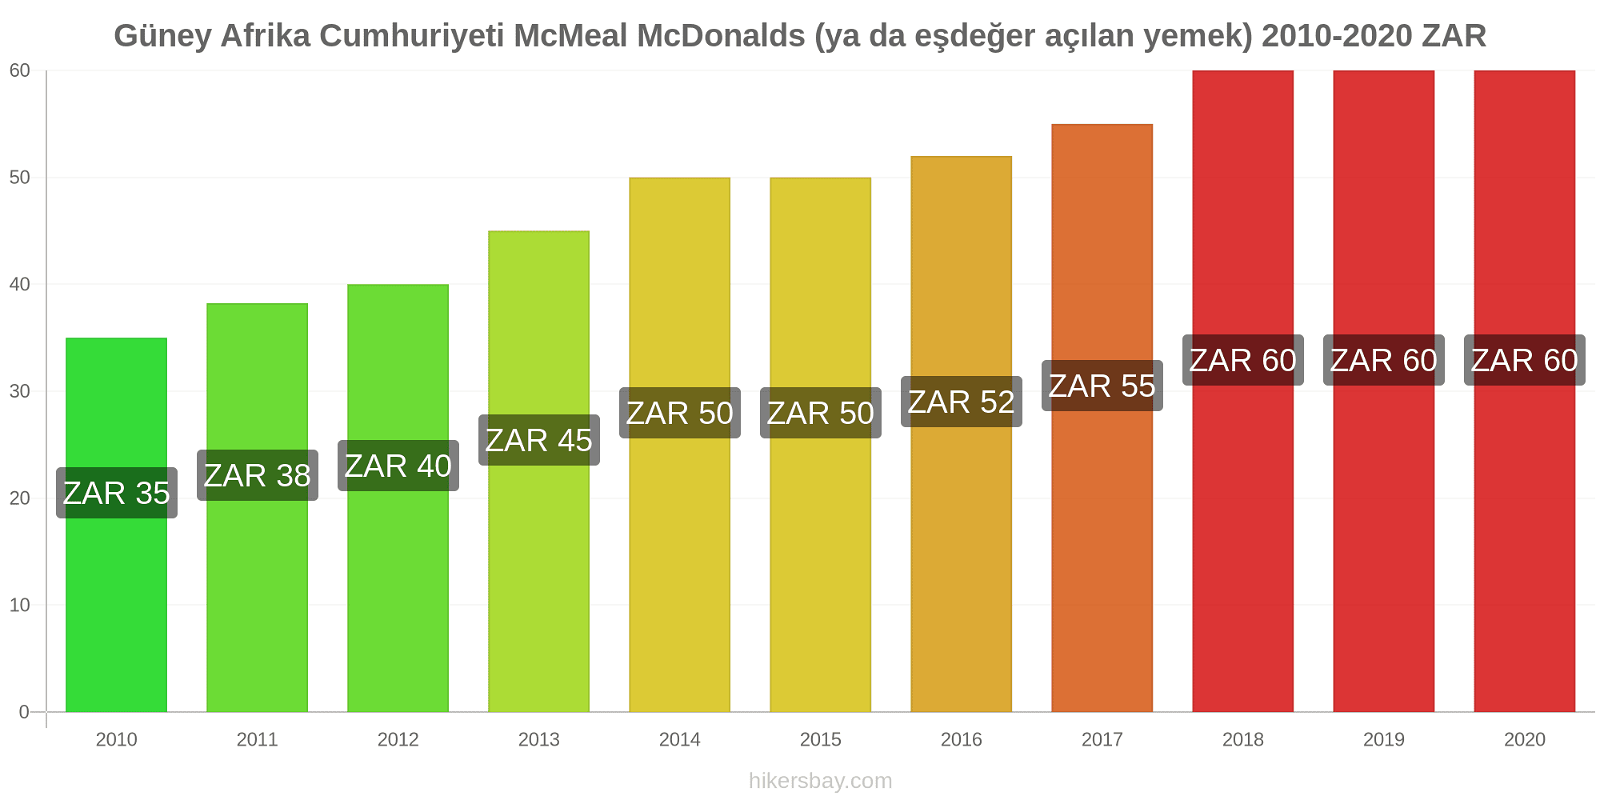 Güney Afrika Cumhuriyeti fiyat değişiklikleri McMeal McDonalds (ya da eşdeğer açılan yemek) hikersbay.com